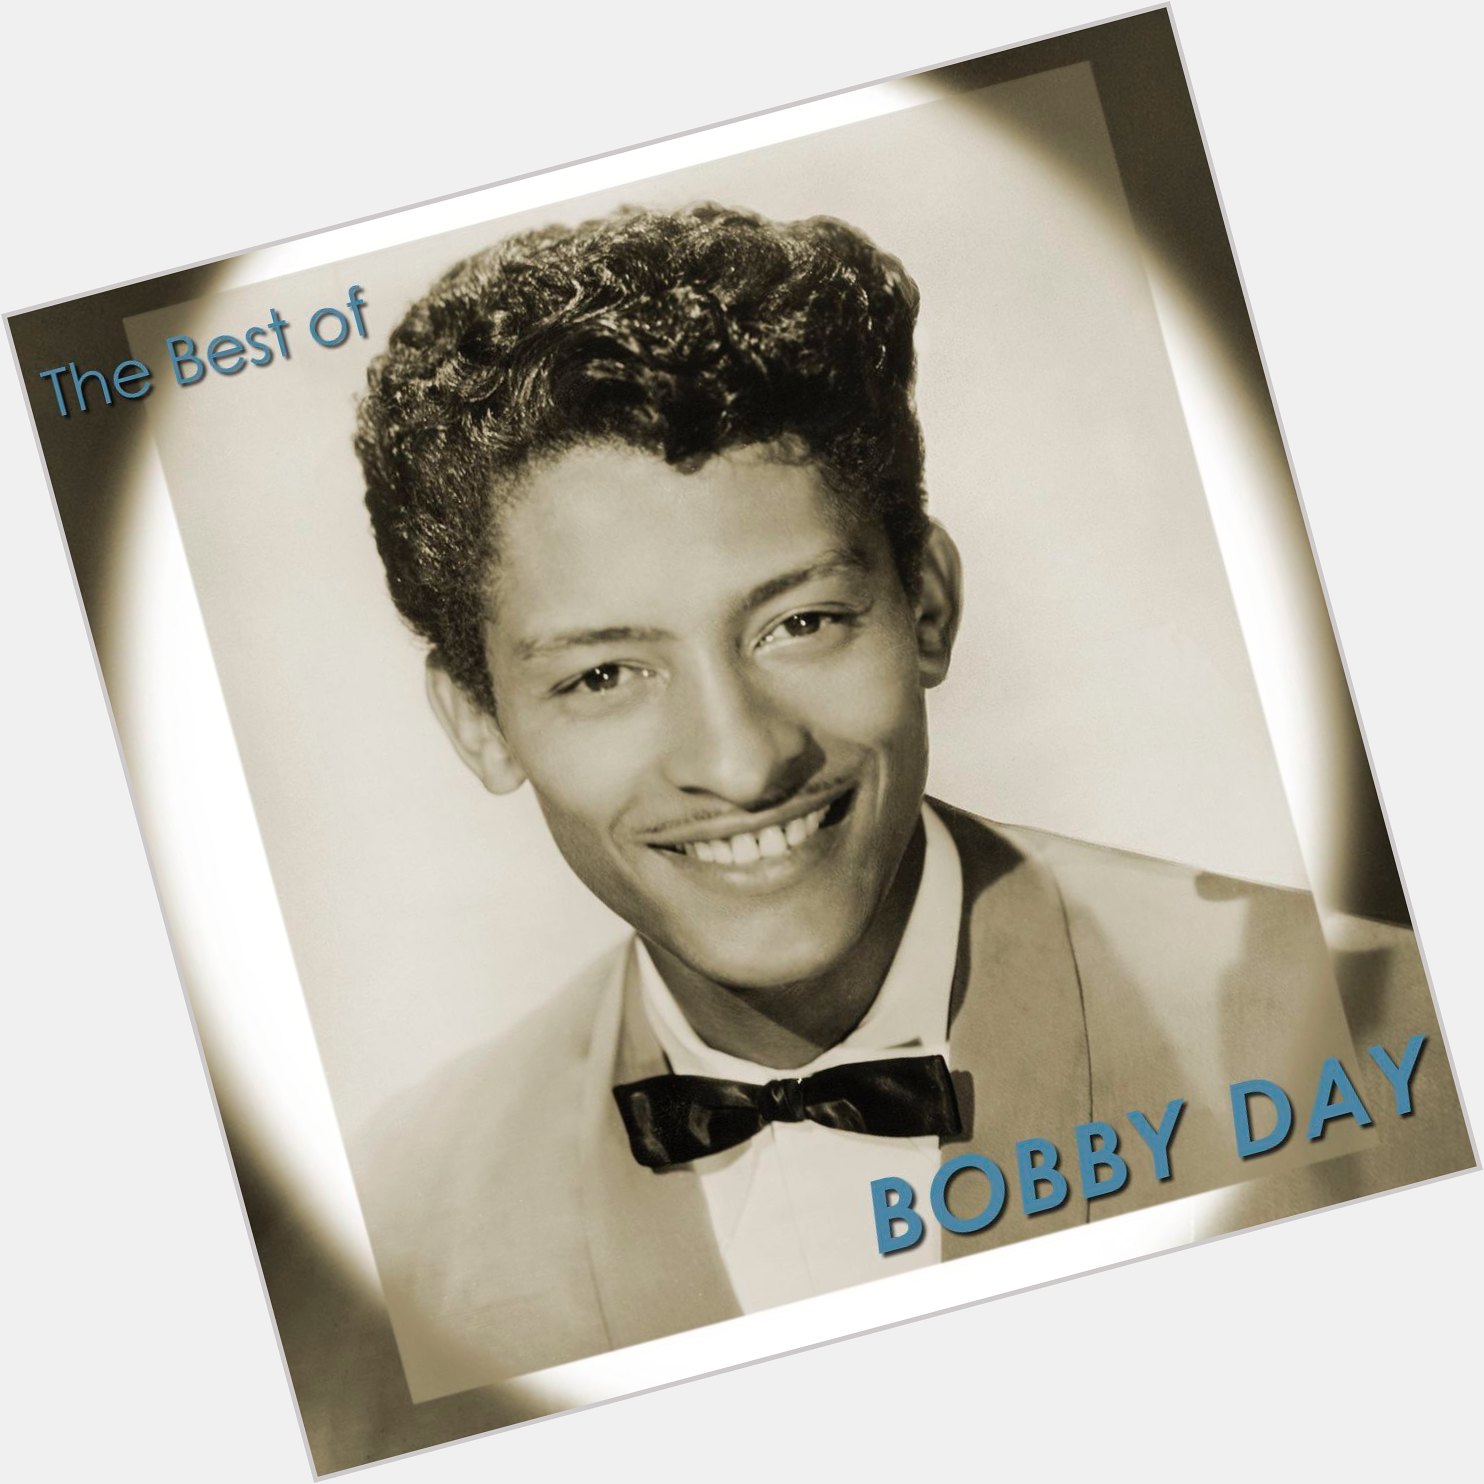 Bobby Day sexy 3.jpg